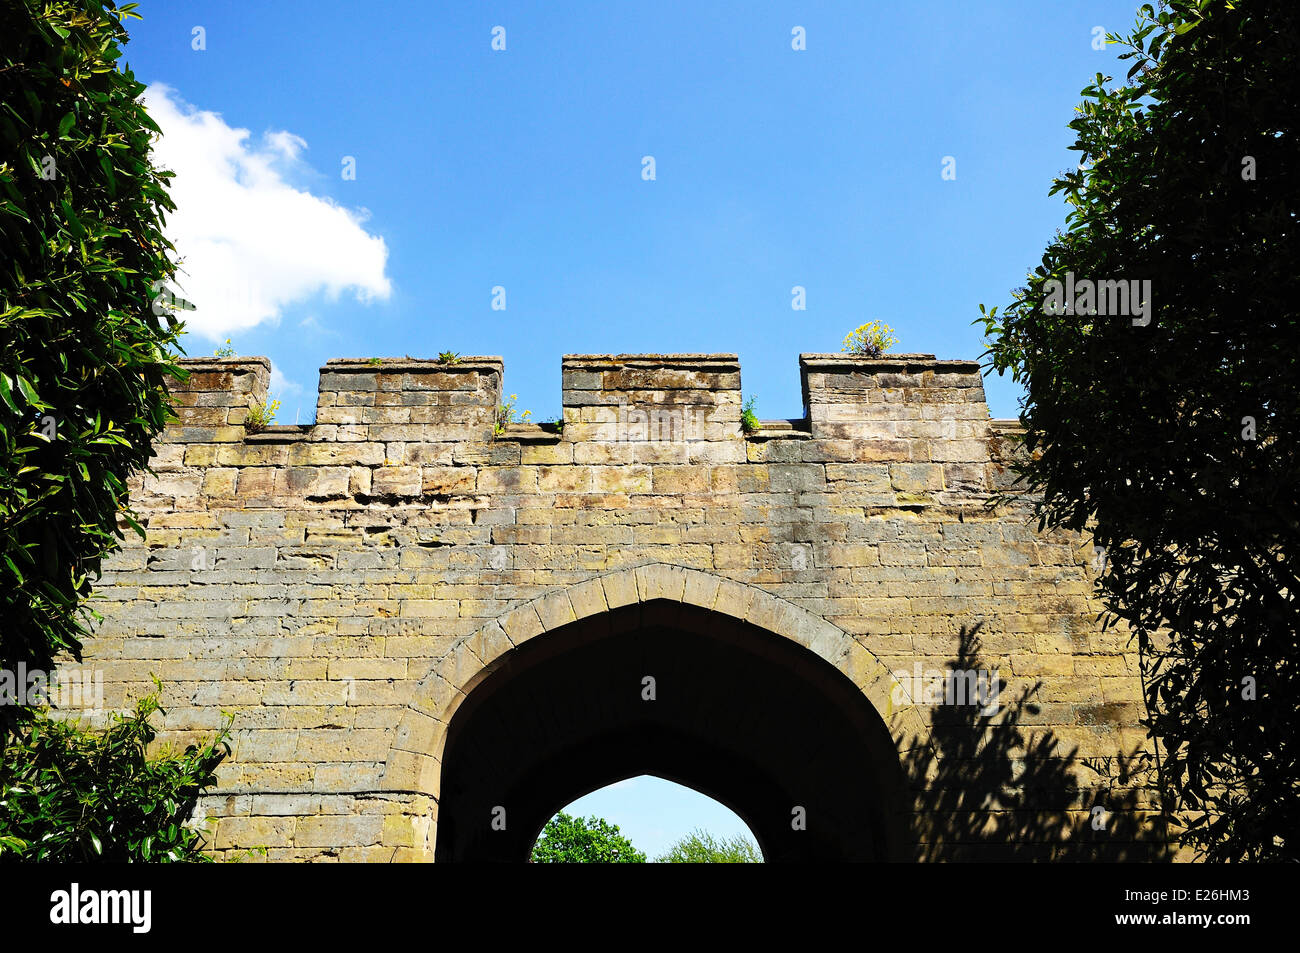 Parte della cinta muraria con merlatura, Warwick, Warwickshire, Inghilterra, Regno Unito, Europa occidentale. Foto Stock